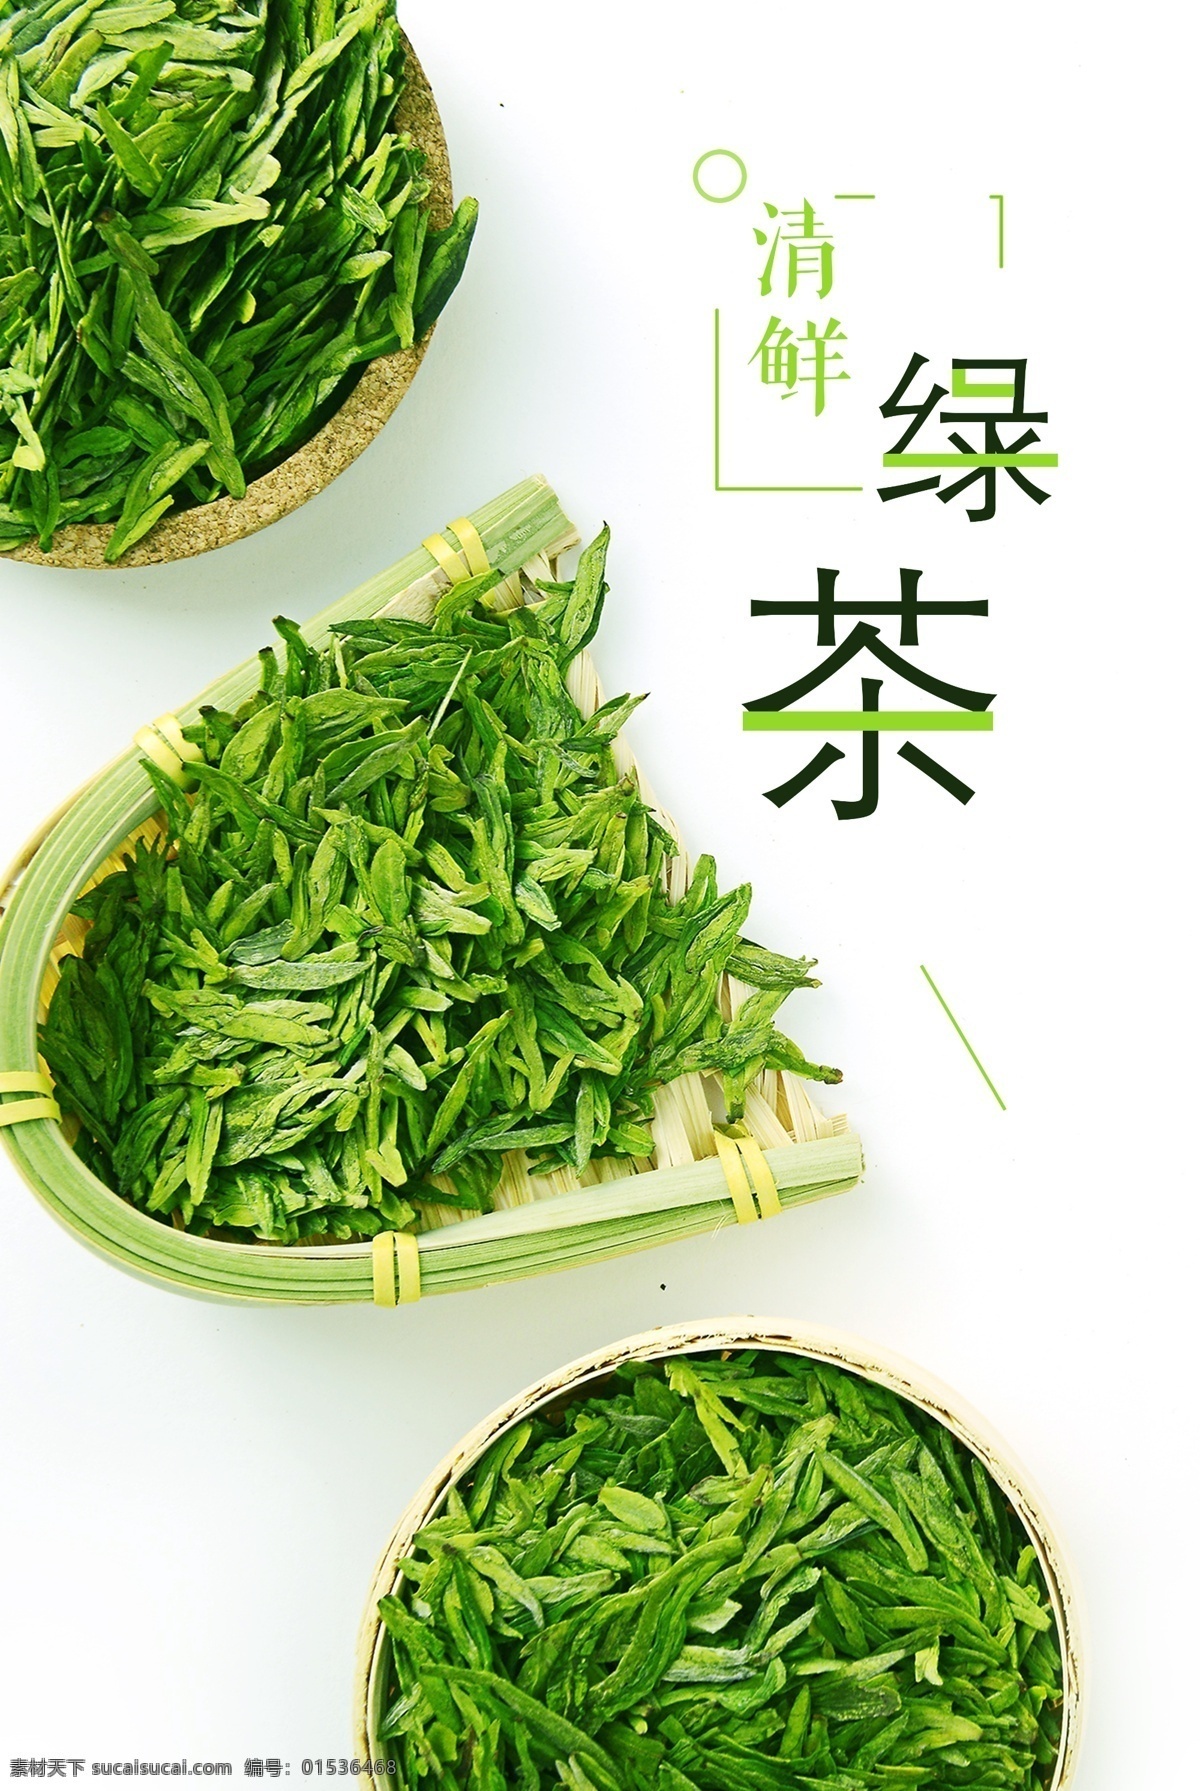 绿茶 清新 春茶 绿色 元素 茶叶 宣传单 海报